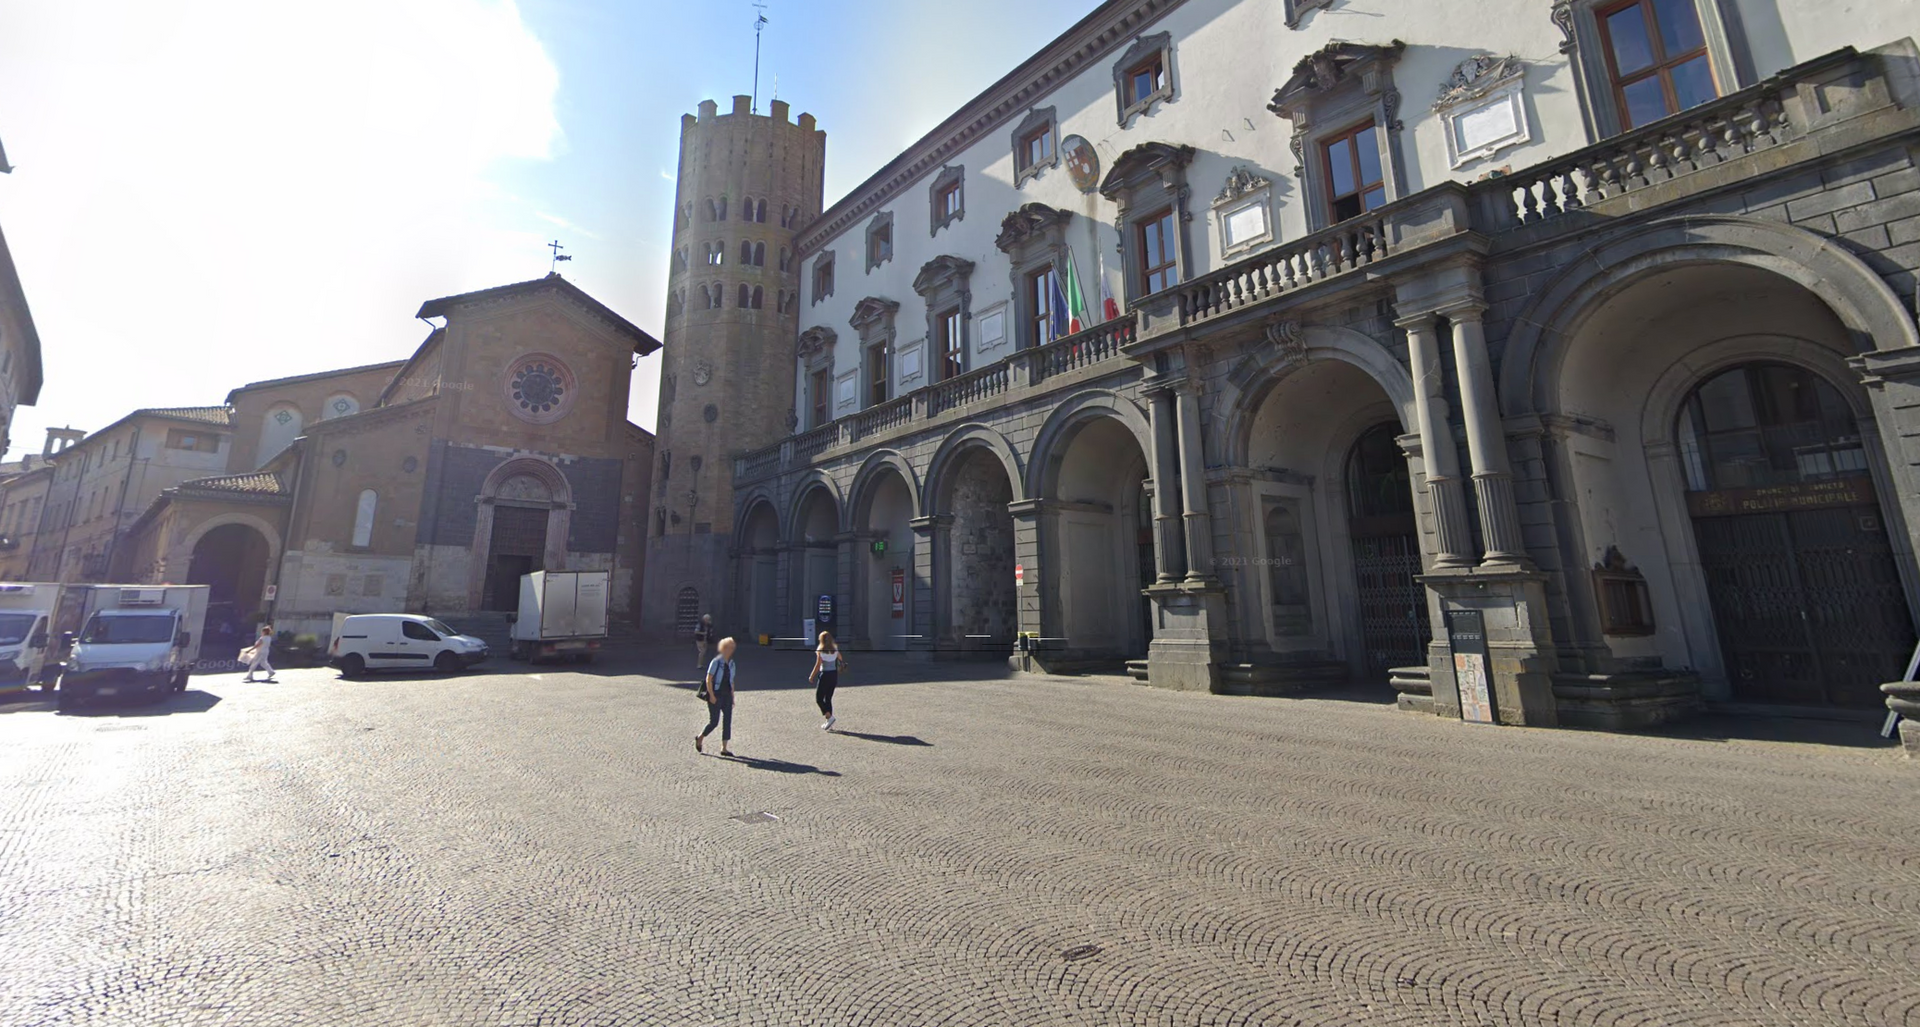 Piazza della Repubblica by Google Earth